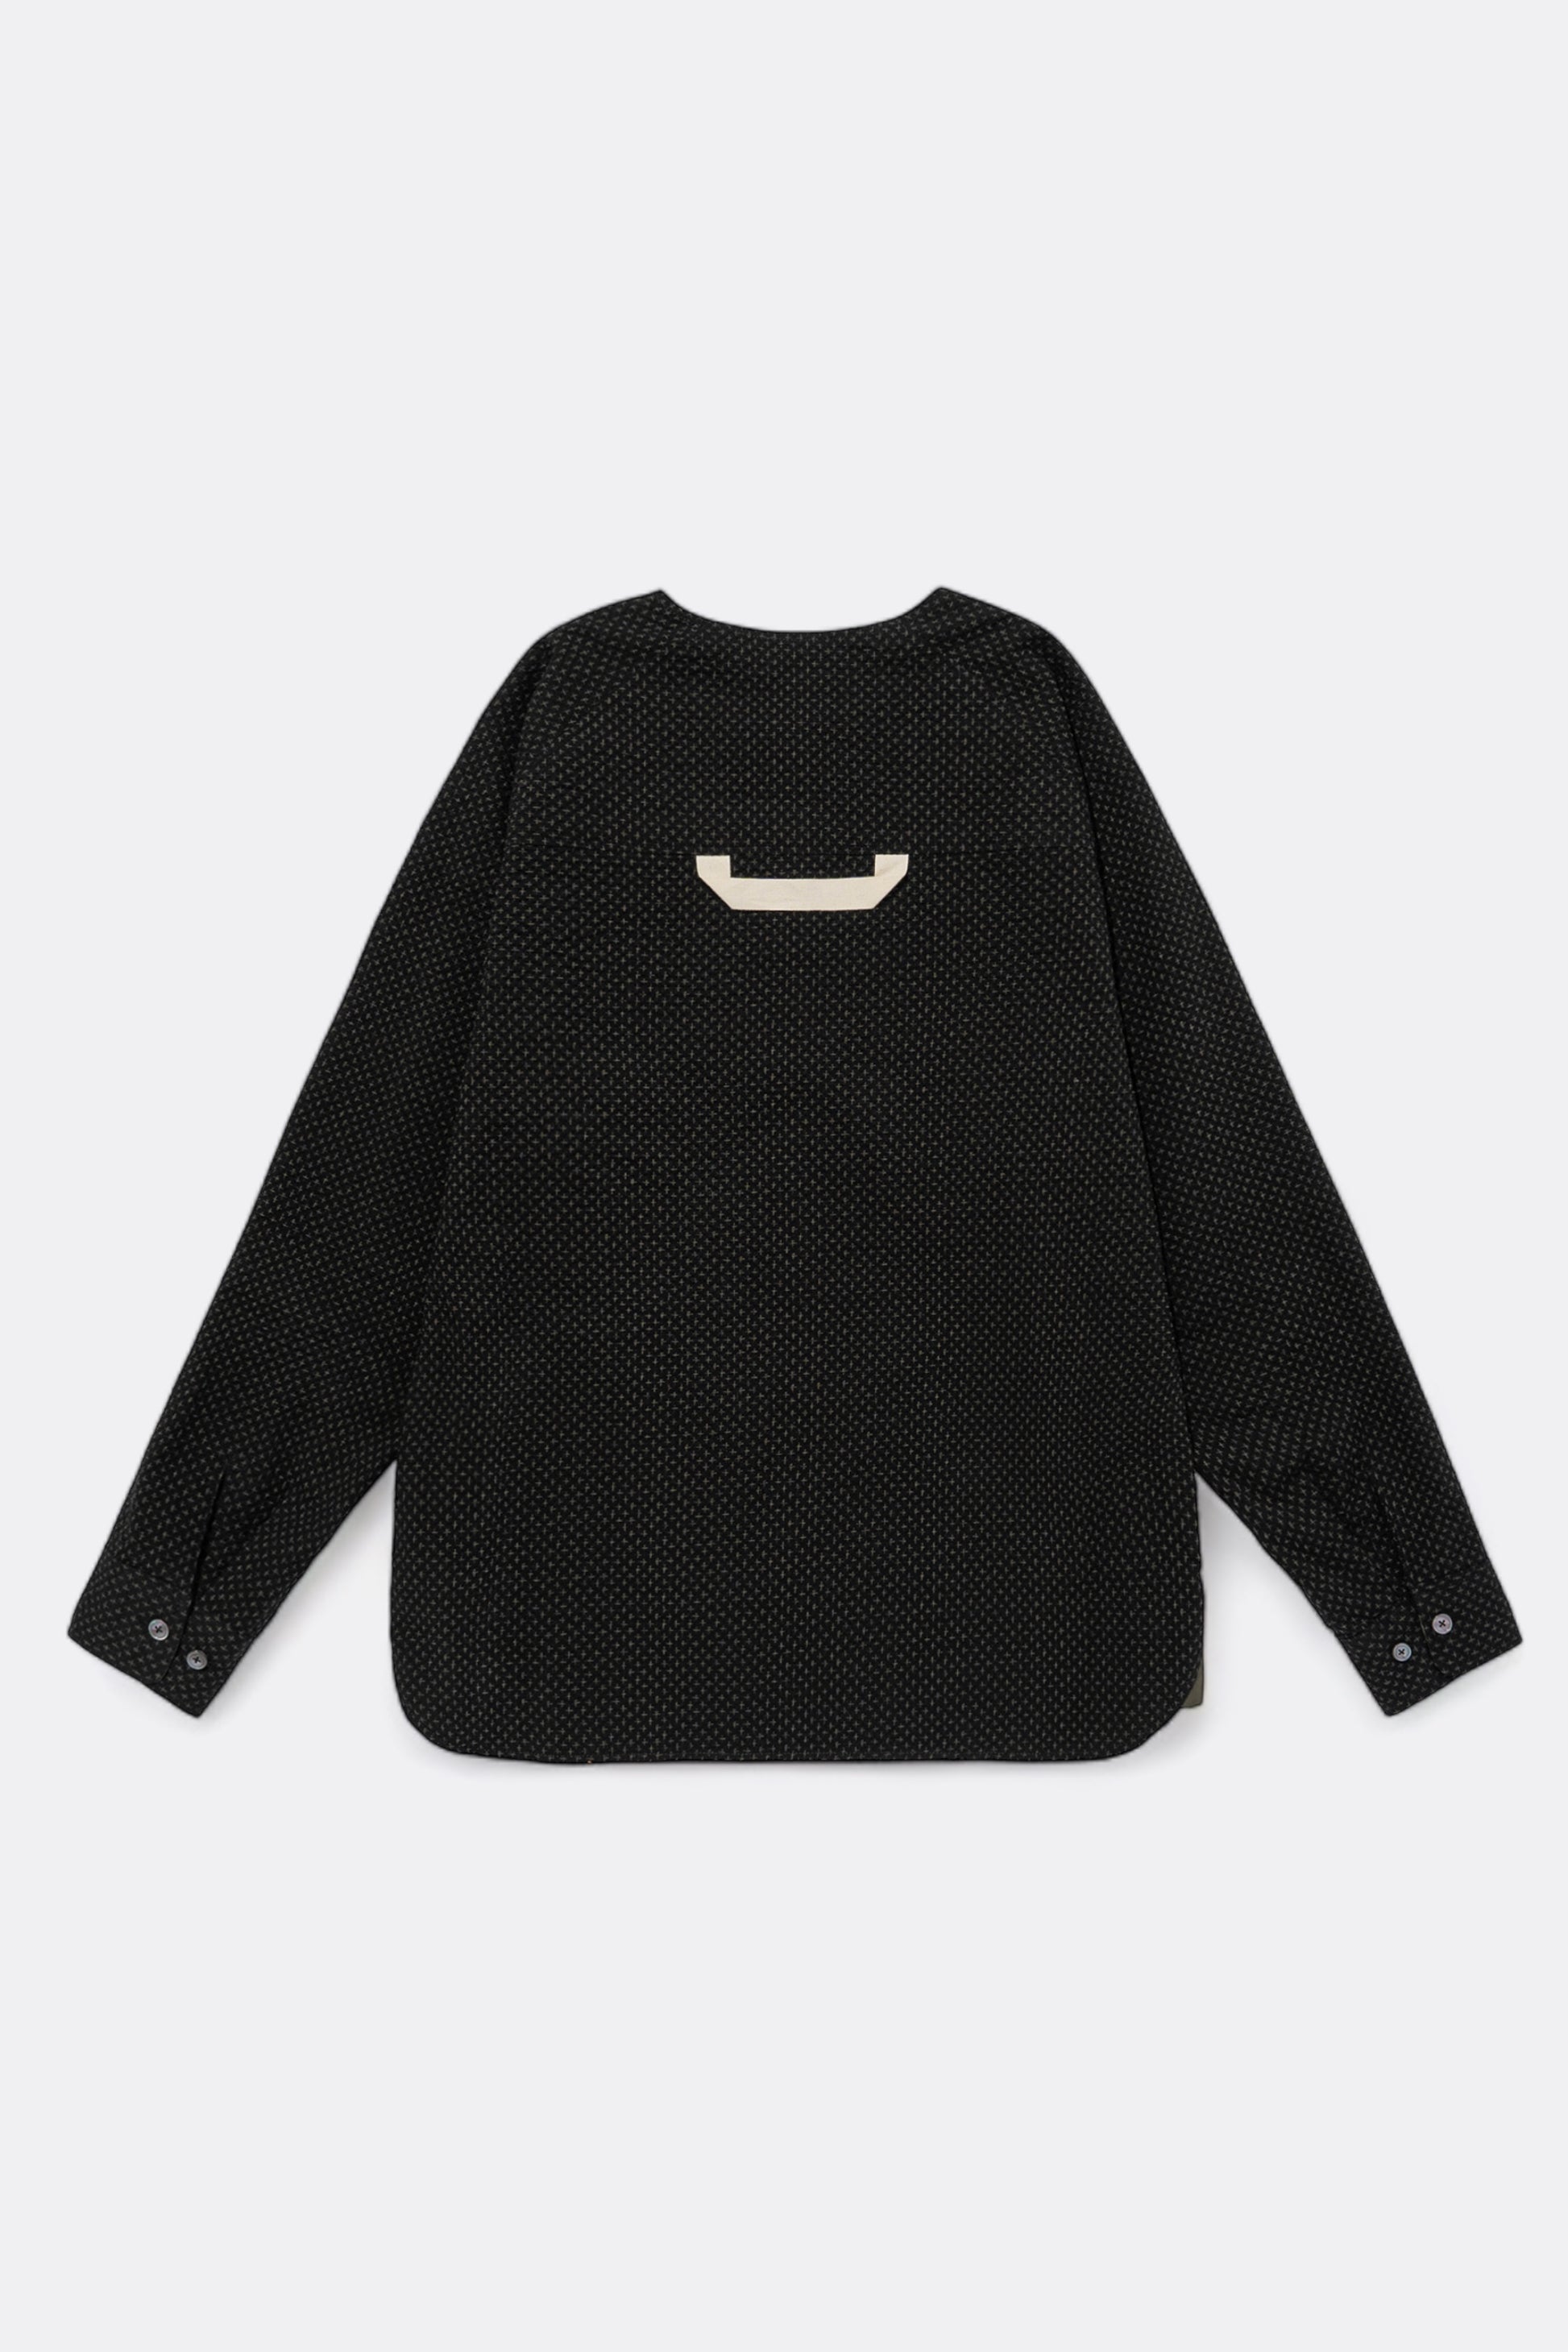 Merely Made - Merely Premium Sashiko Printed Reversible Shirt (Black)